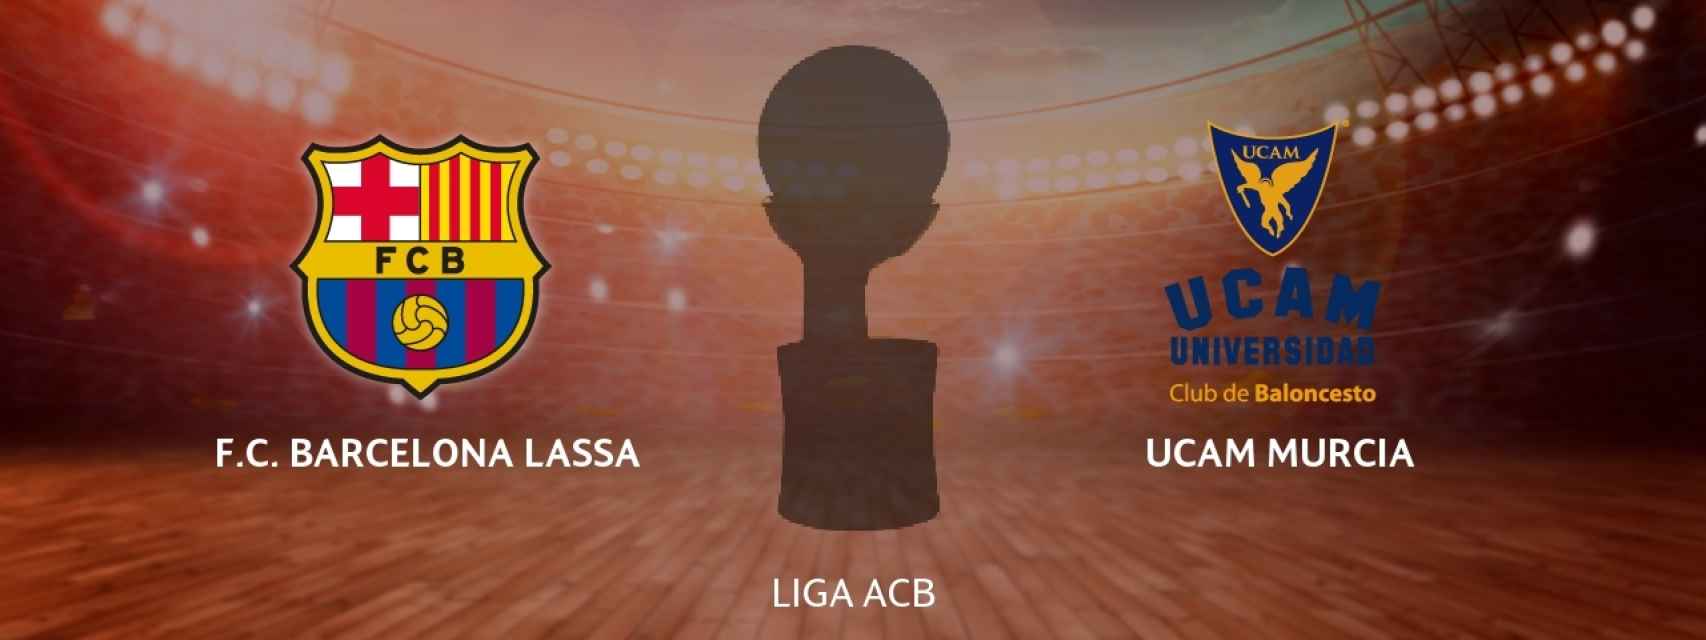 FC Barcelona Lassa - UCAM Murcia, siga en directo el partido de ACB